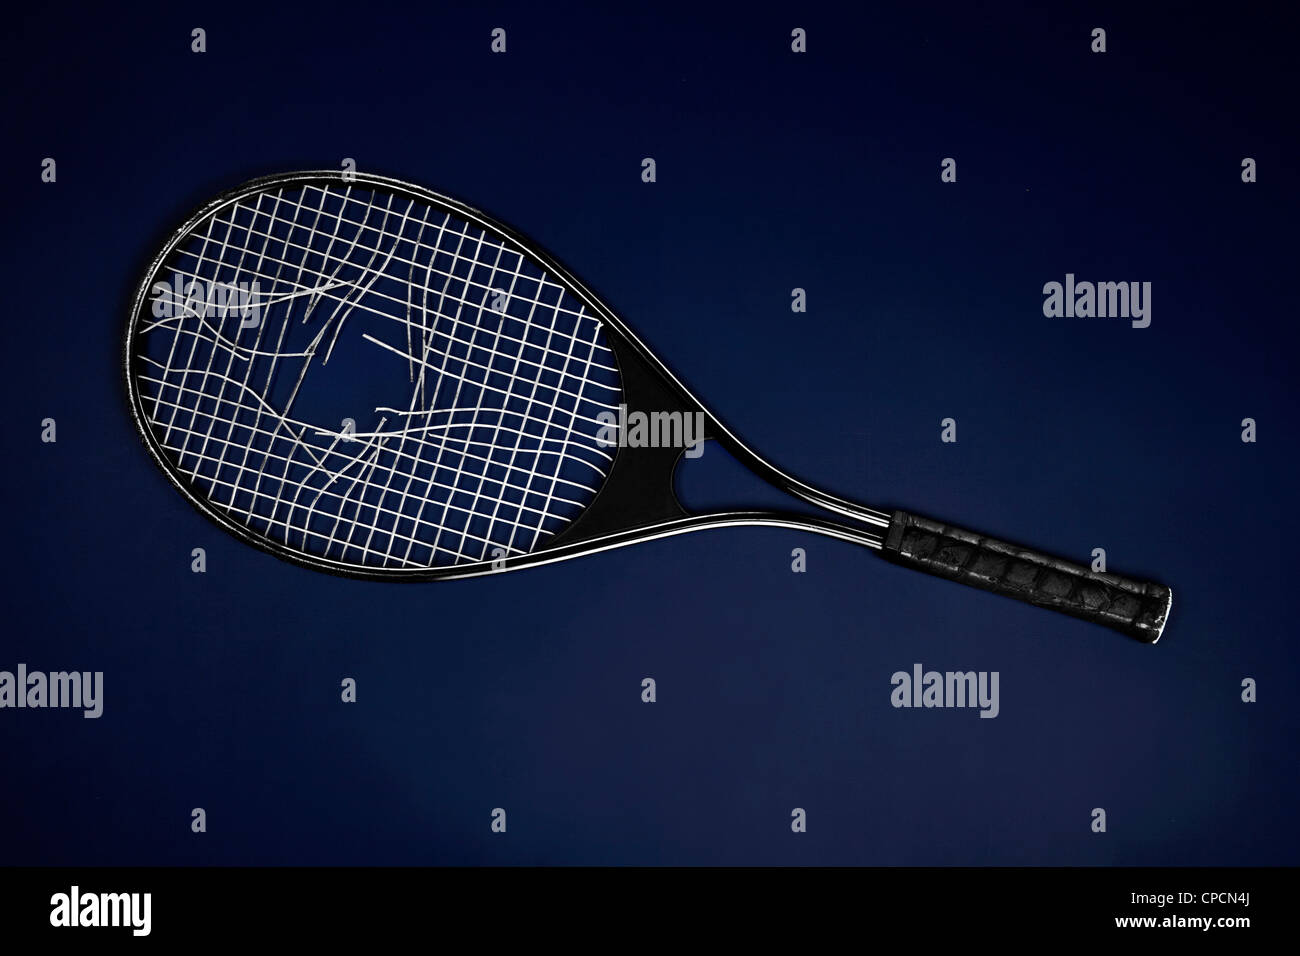 Racquet broken immagini e fotografie stock ad alta risoluzione - Alamy